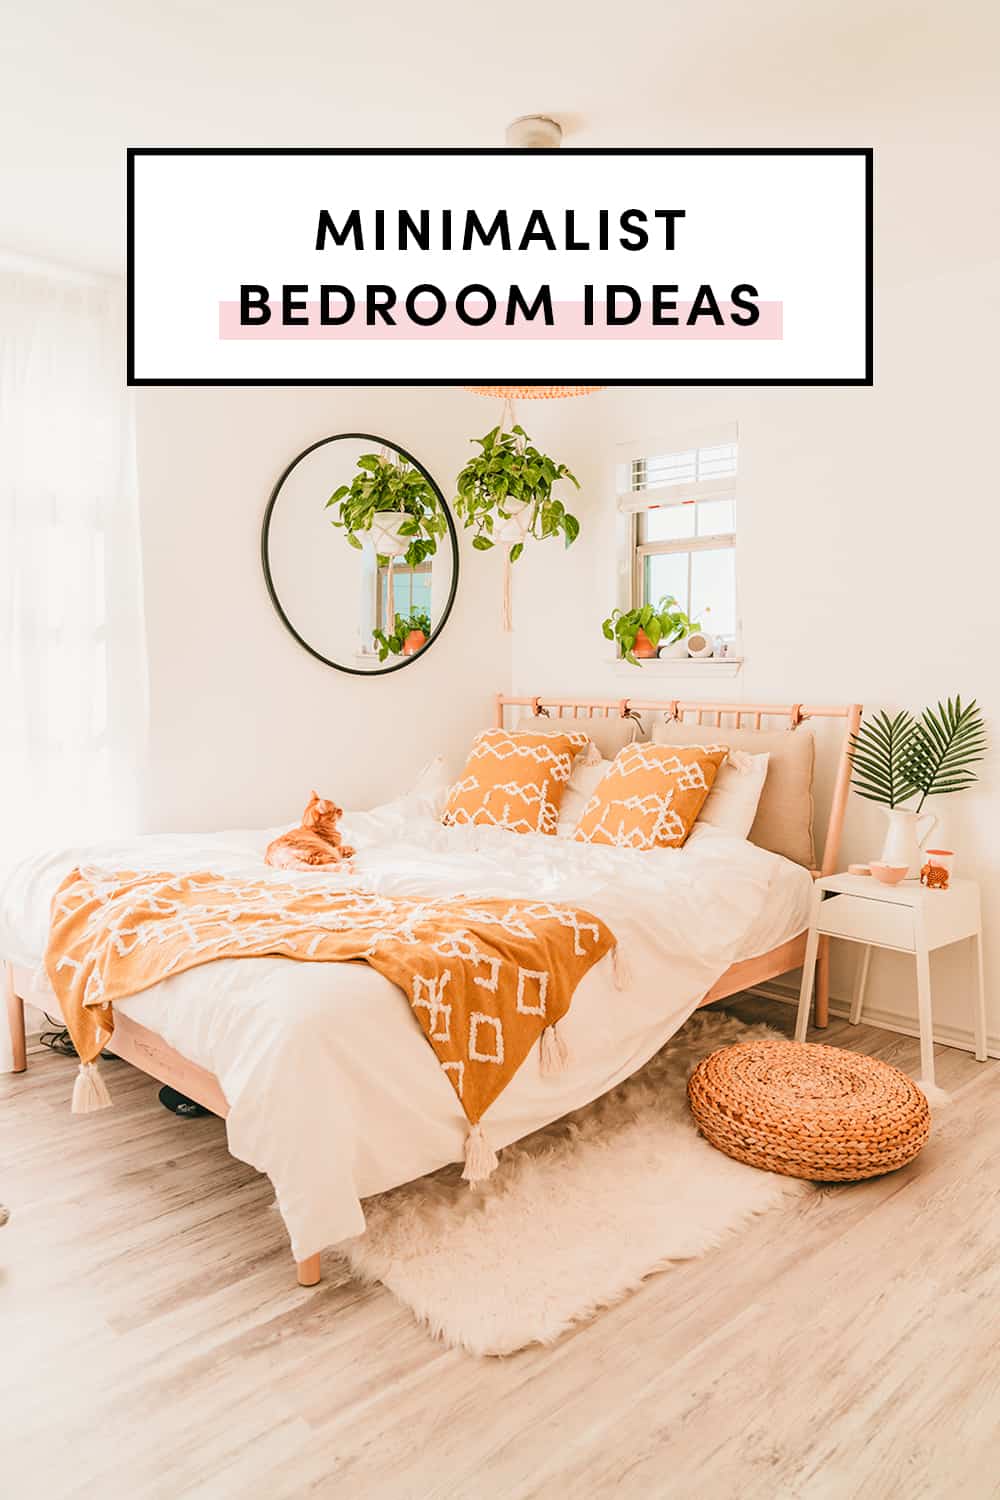 Minimalist bedroom ideas